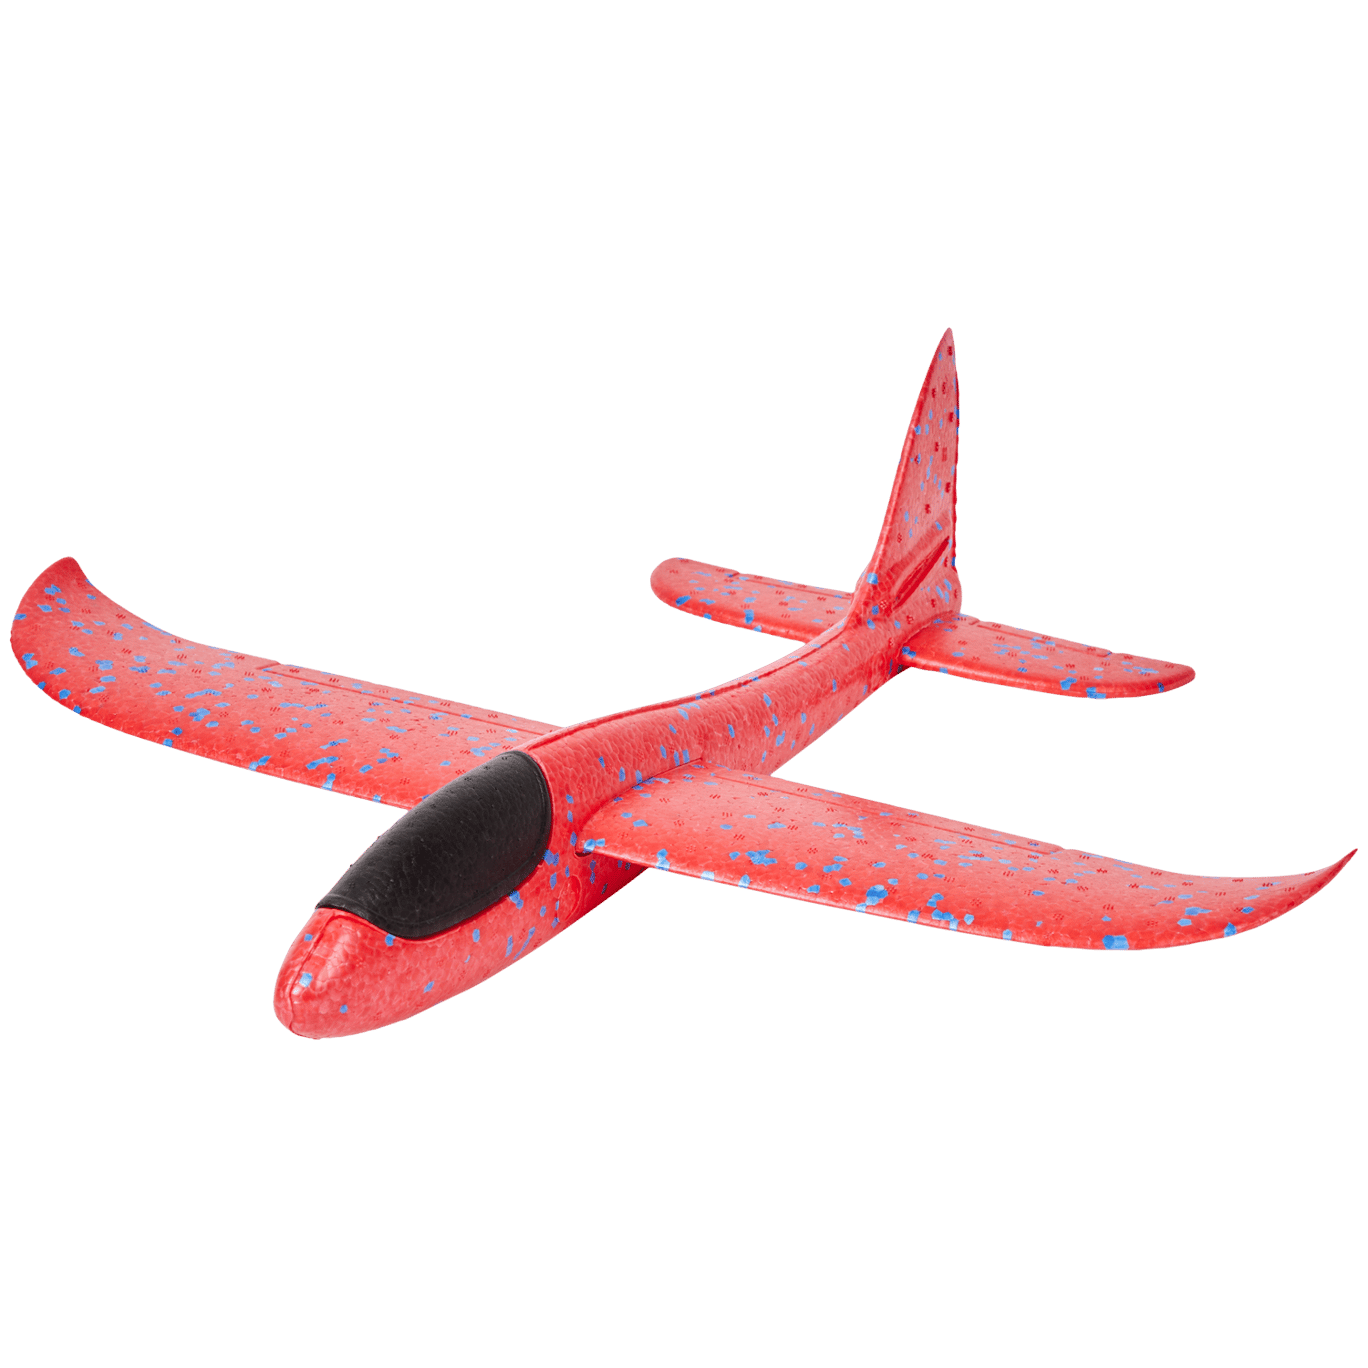 Avion planeur à lancer jouet enfant polystyrène styro à monter volant